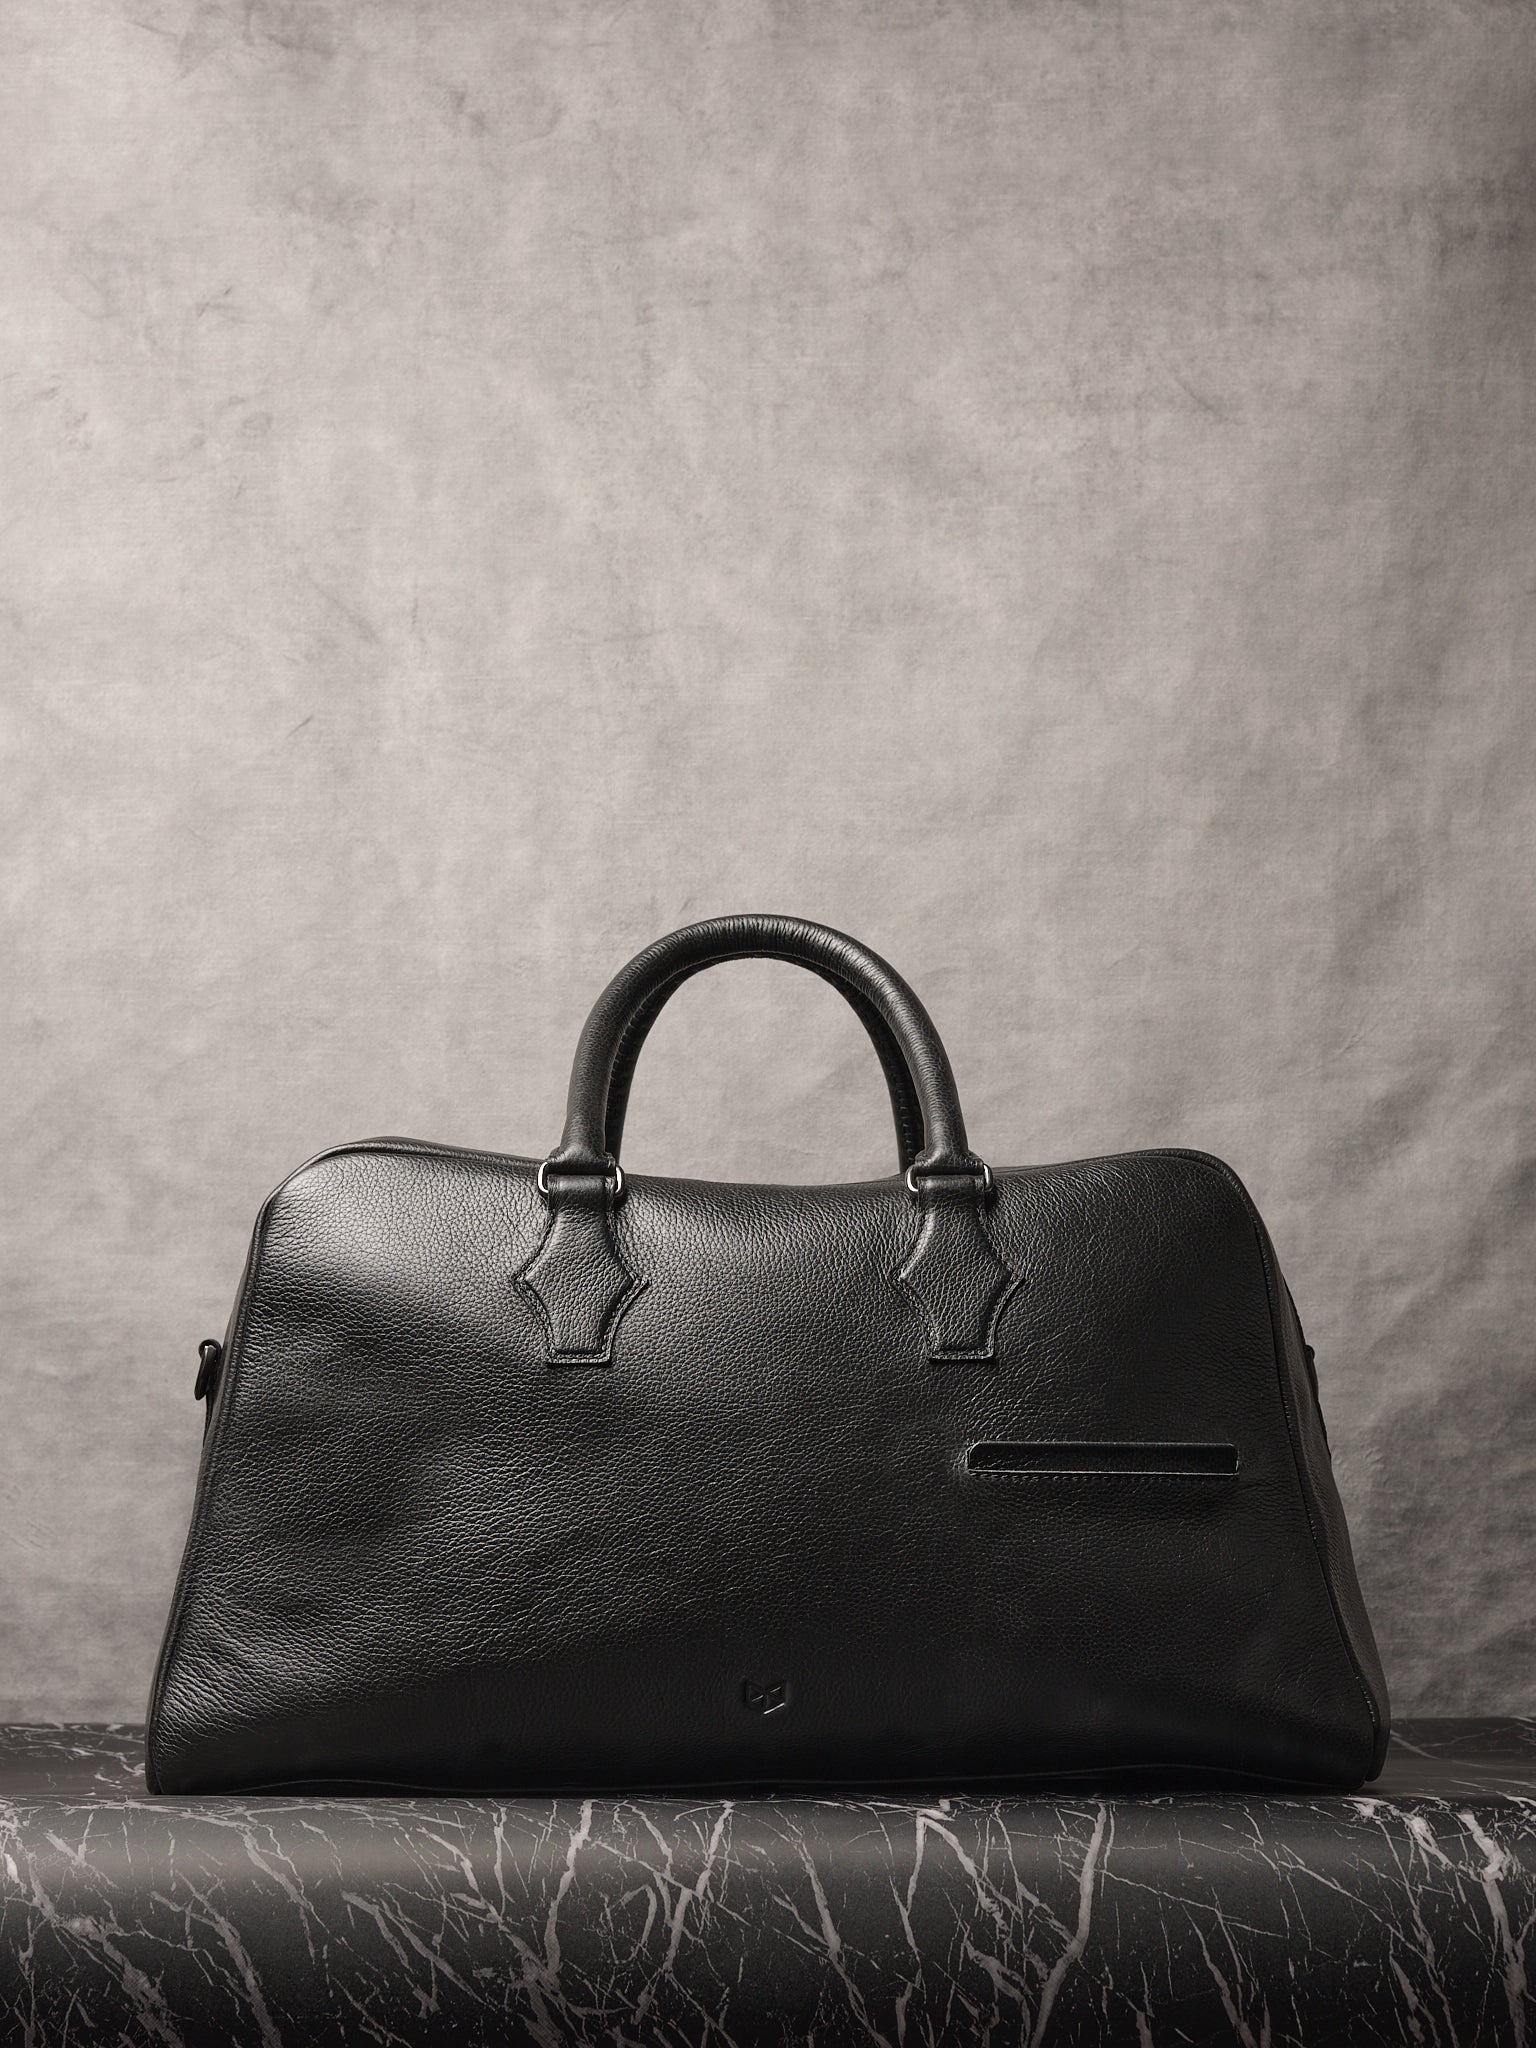 Black Leather Duffle Bag. Weekender Bag by Capra Leather